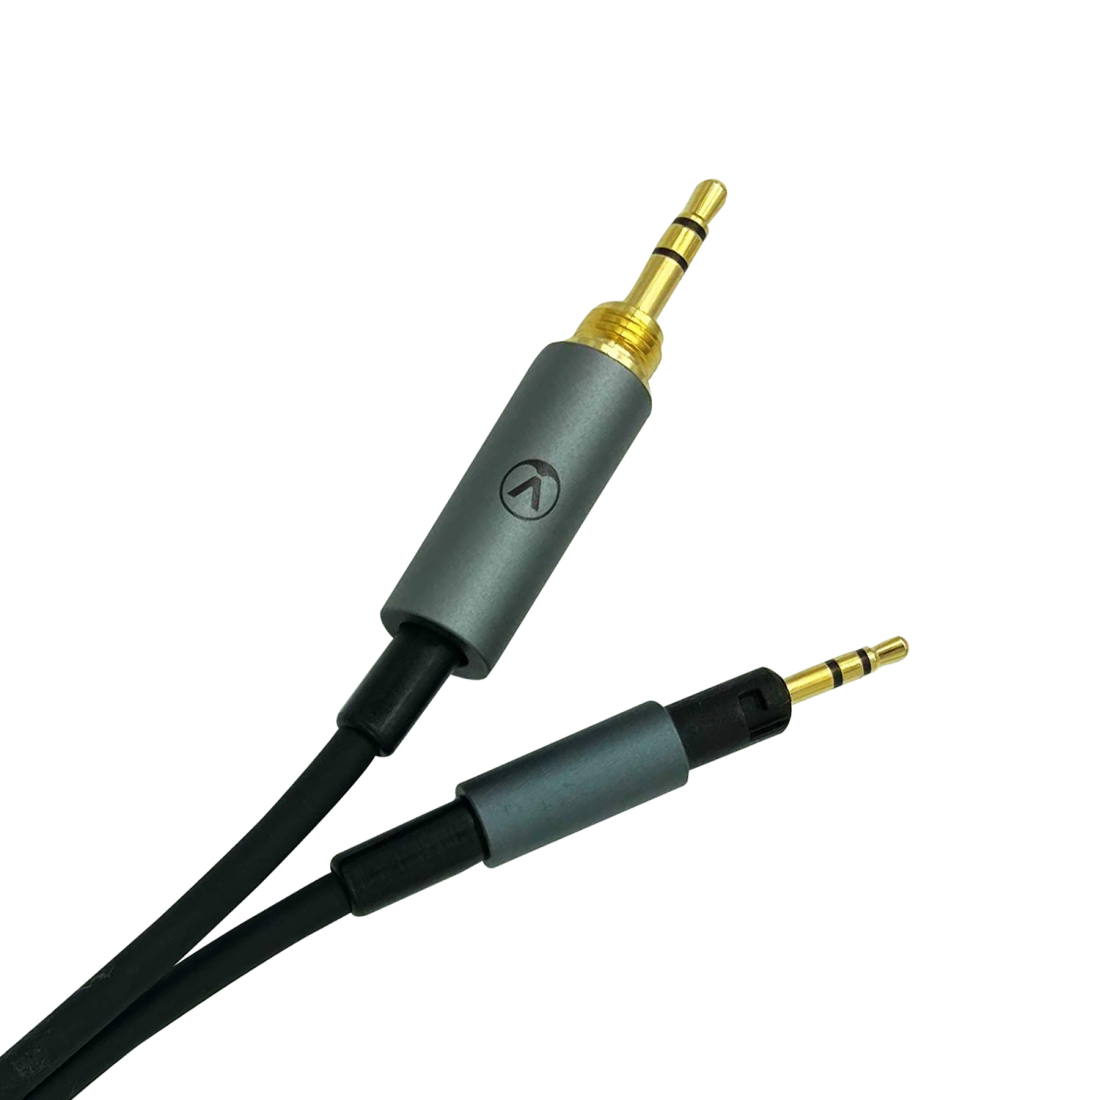 Headphone Cable for Hi-X65/Hi-X55/Hi-X50 - 3 m